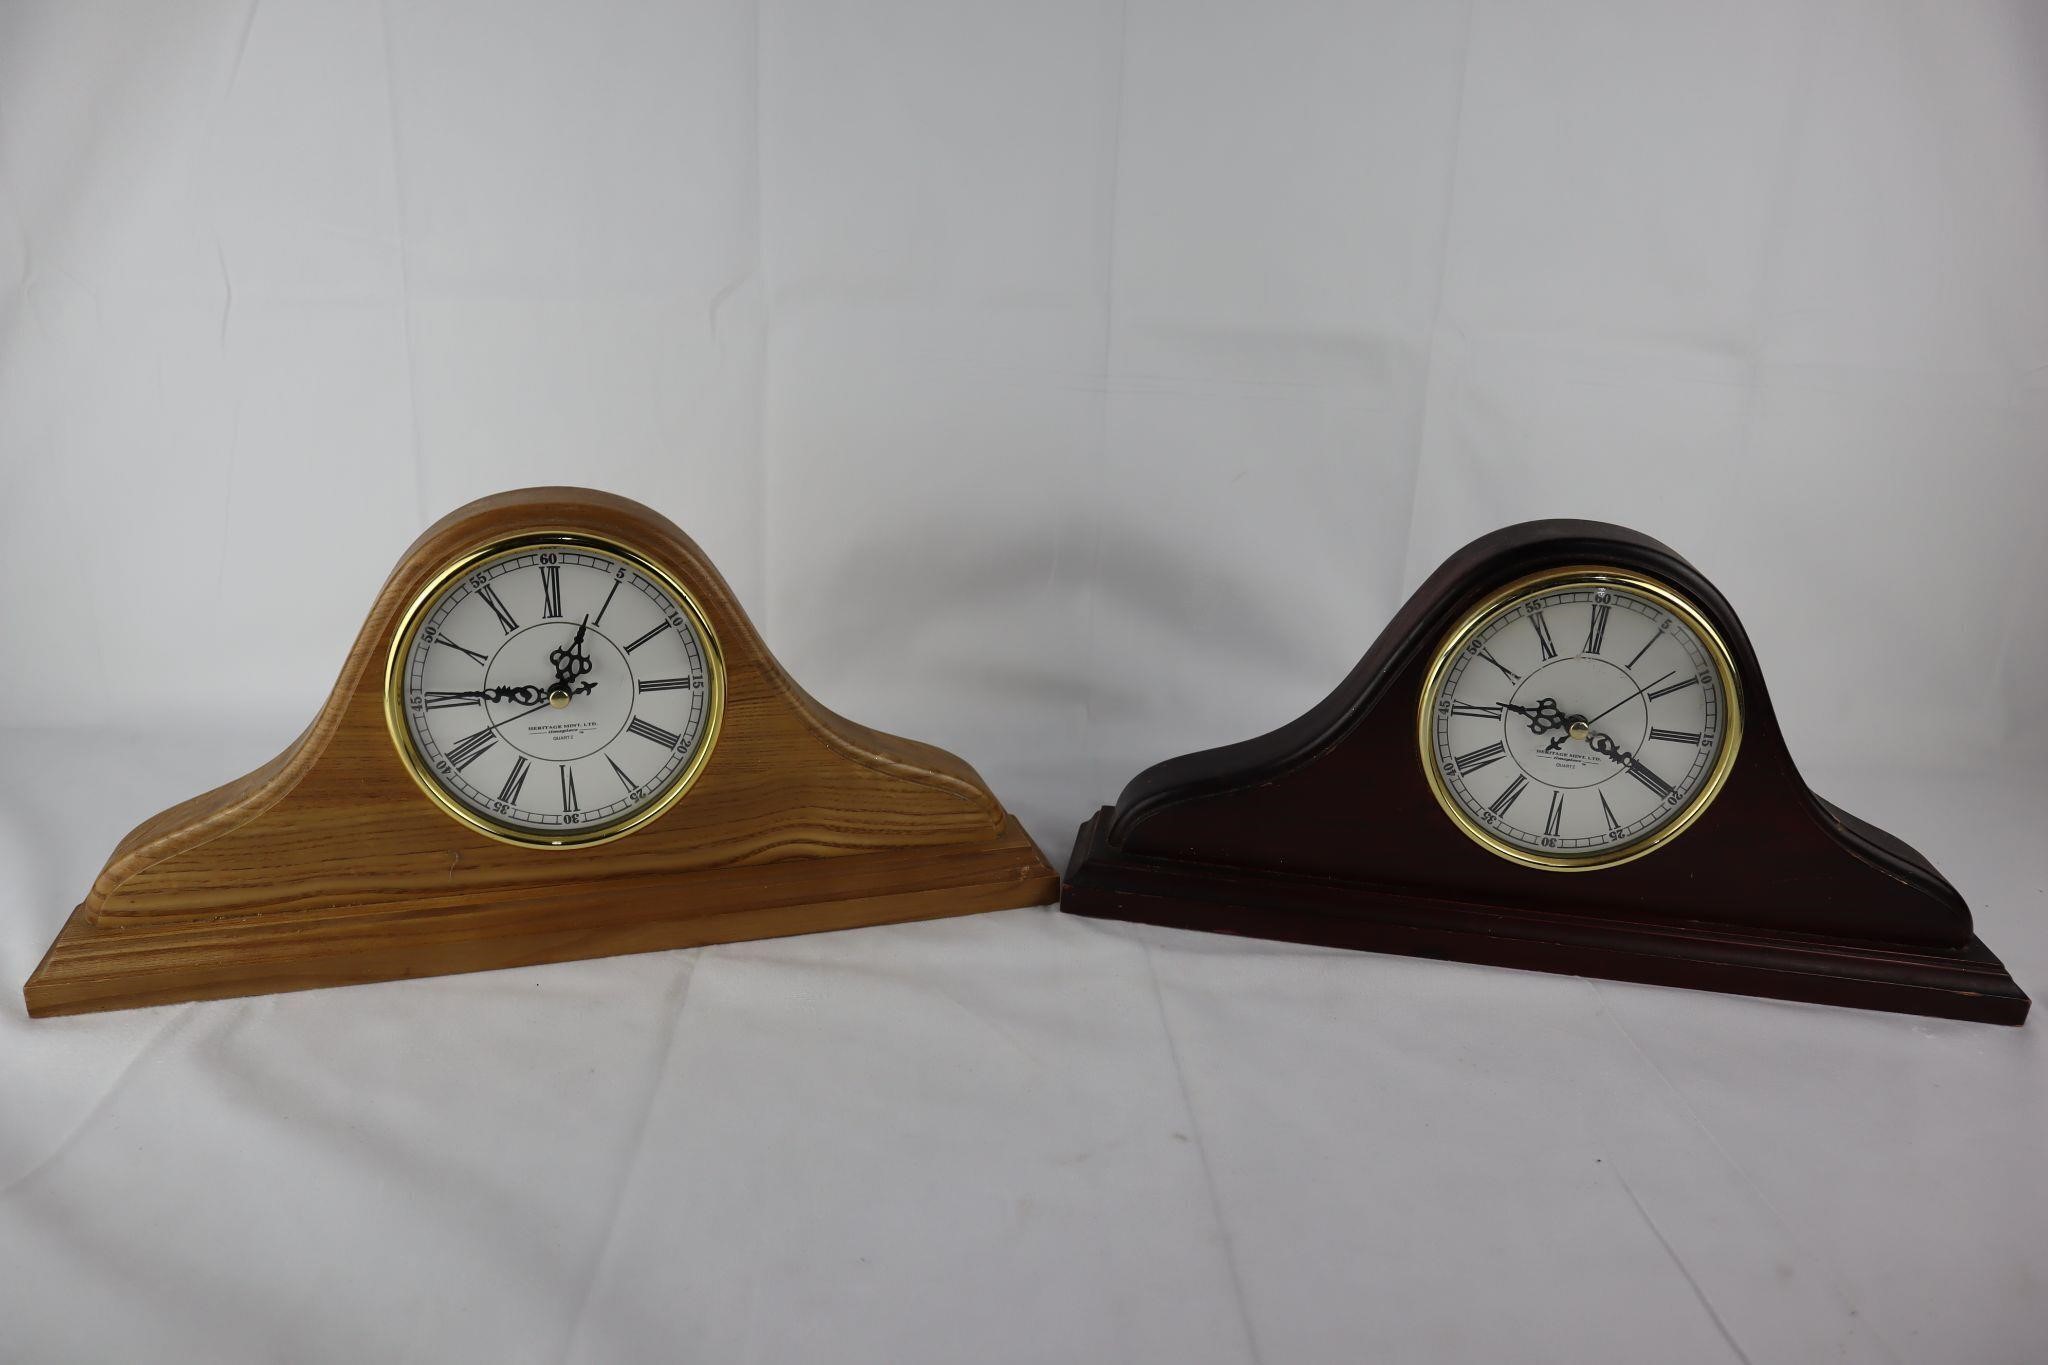 Heritage Mint Ltd. Mantle Clocks